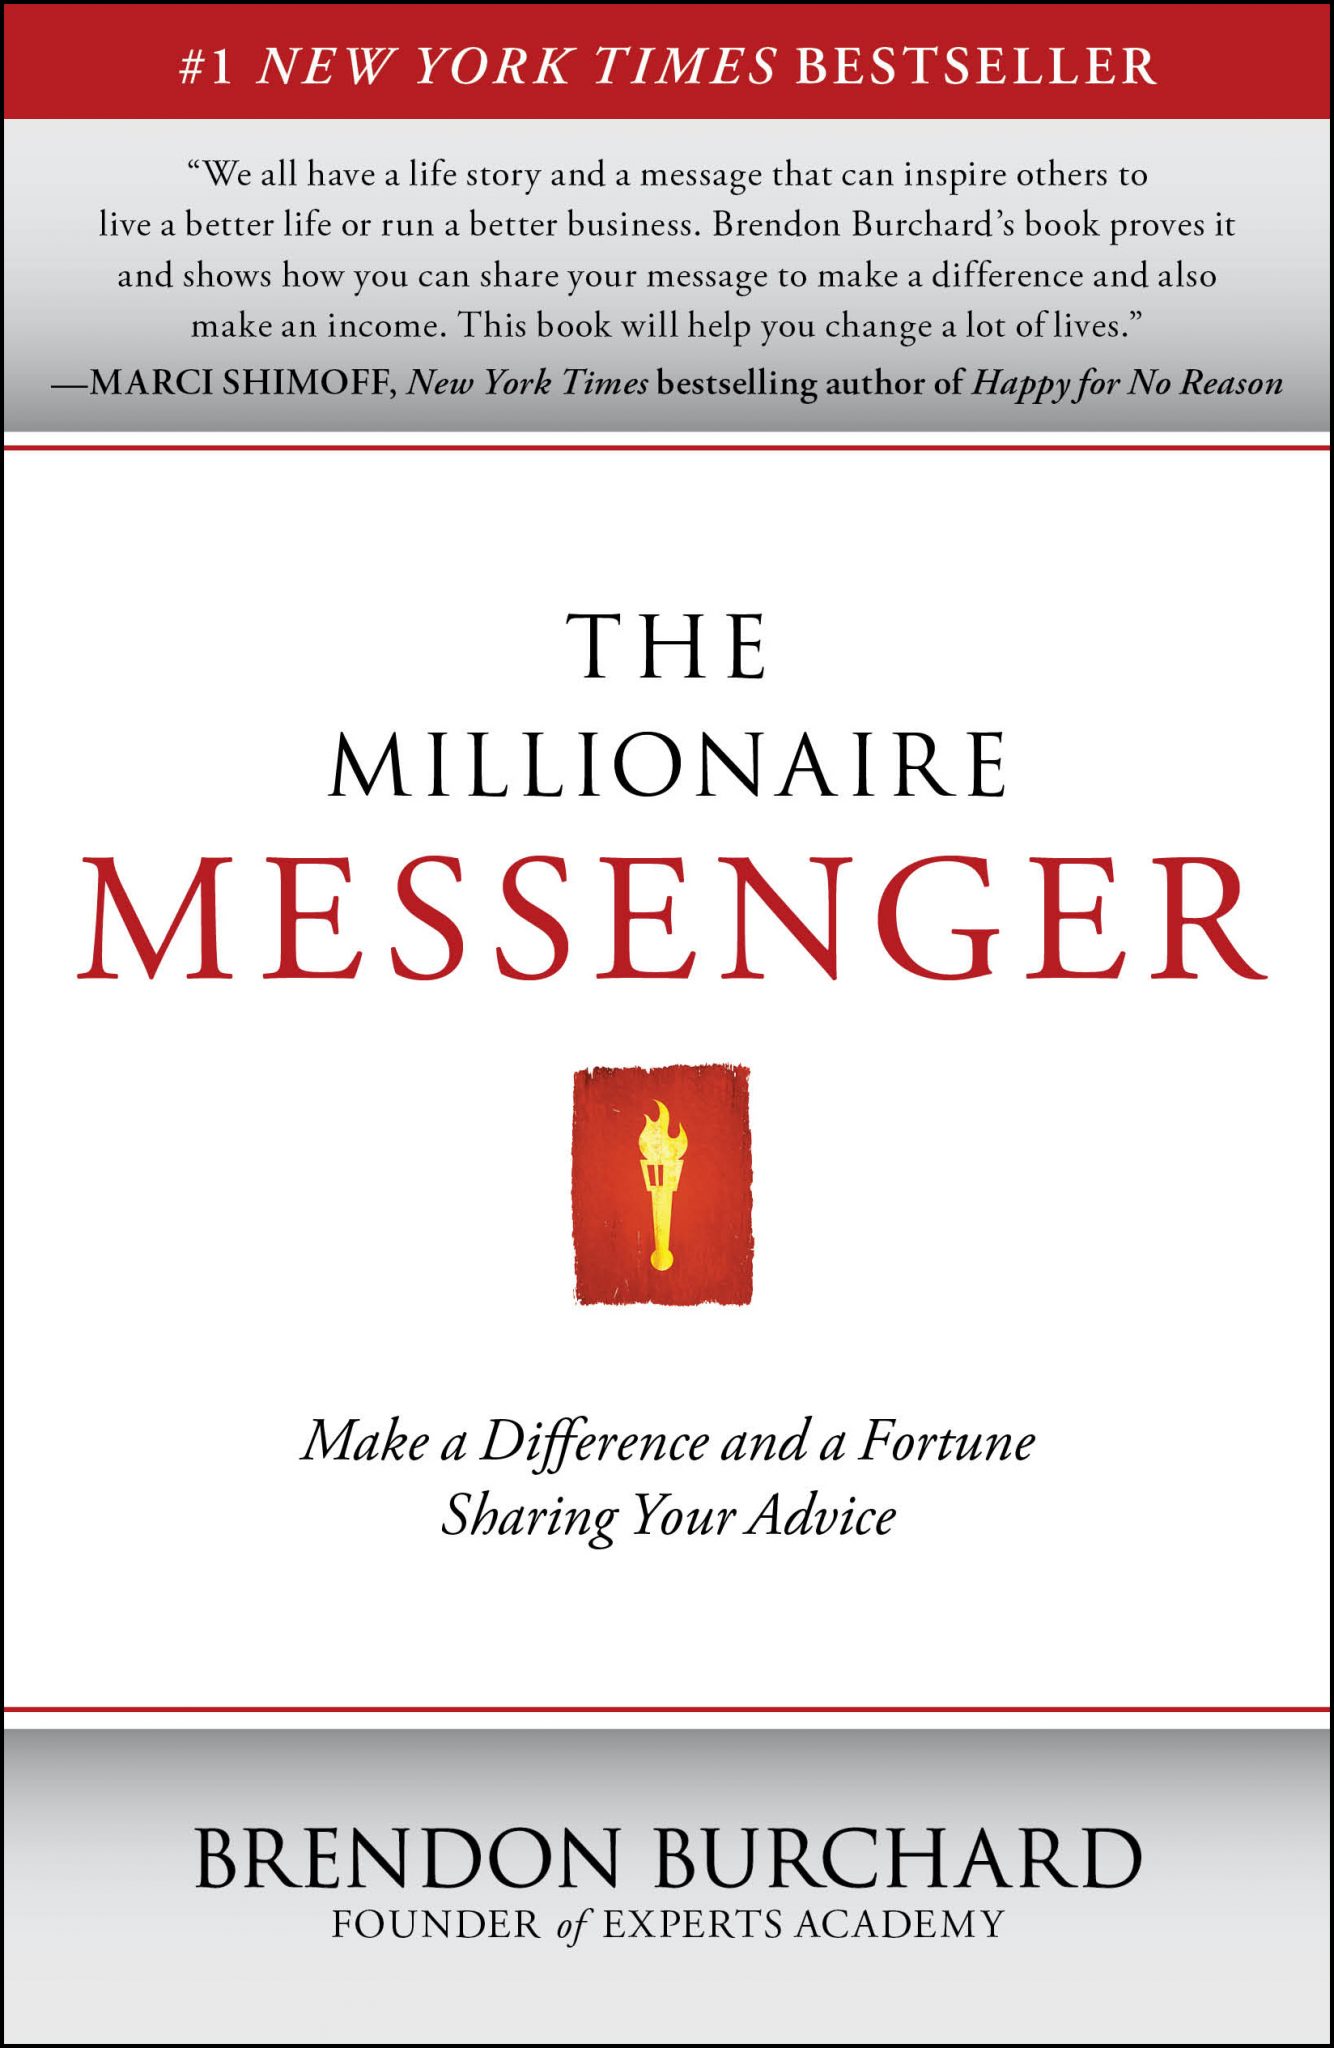 Millionaire messenger, book summary, turbomind.com